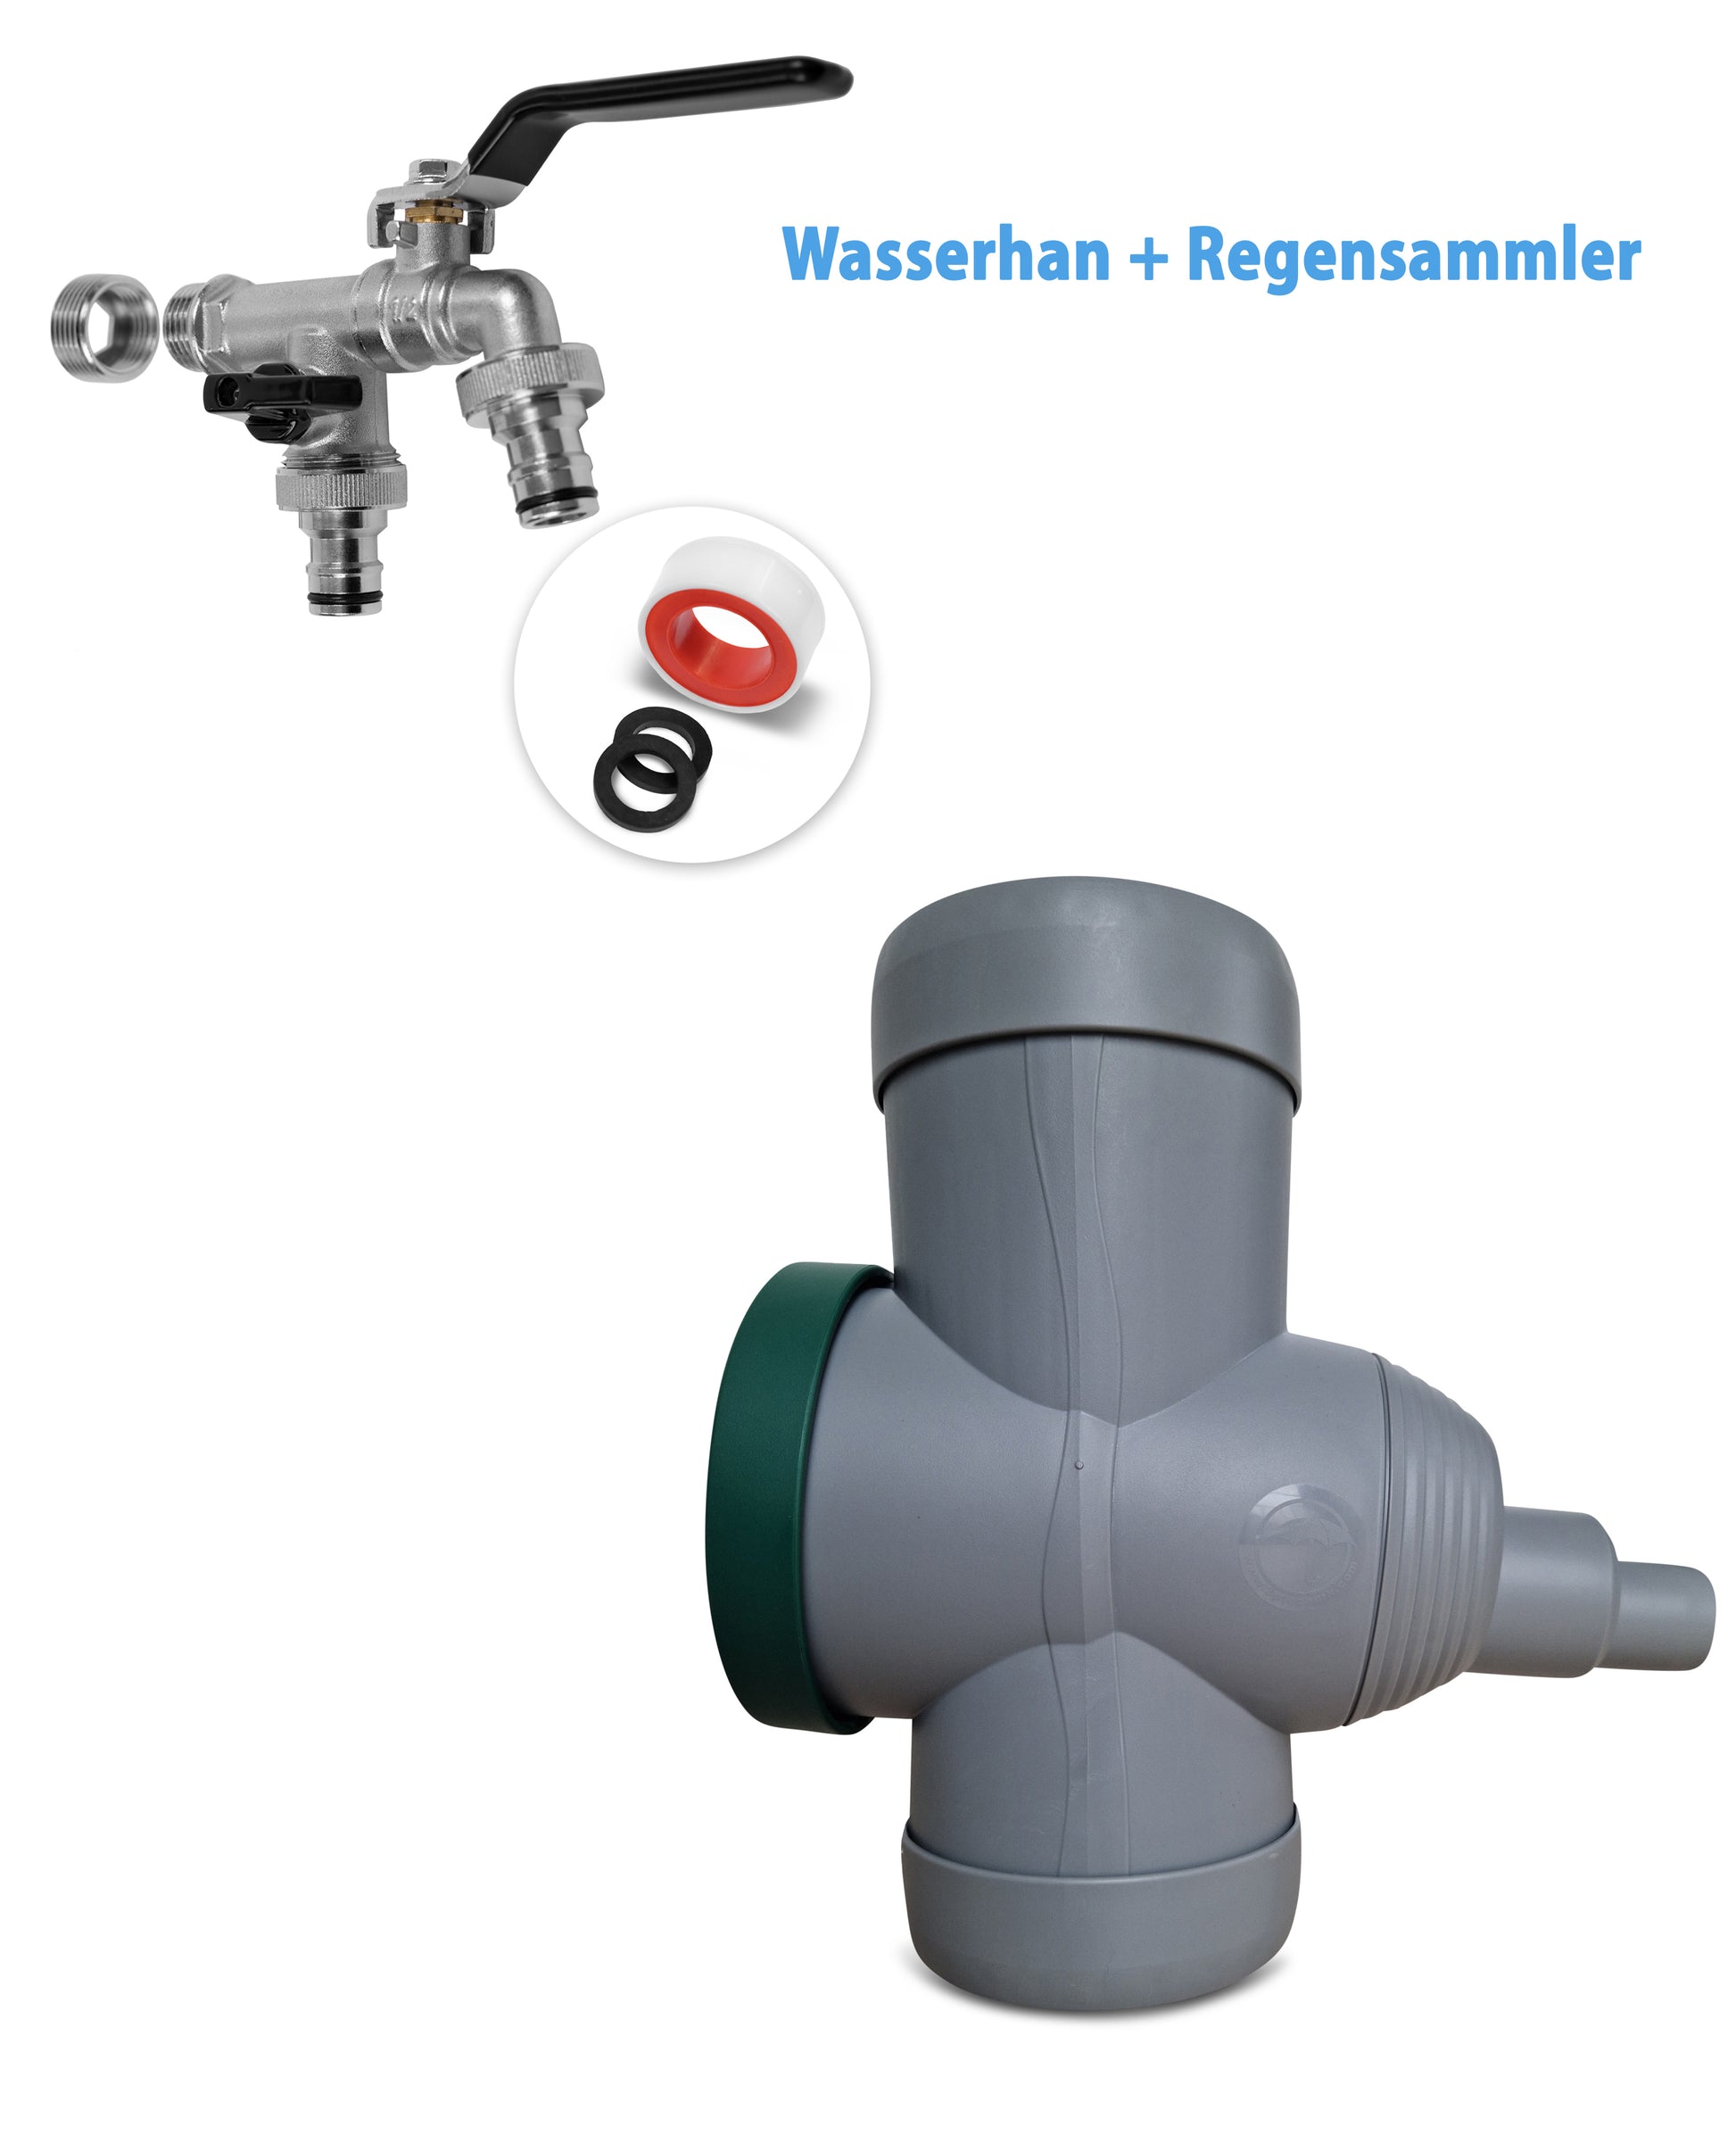 YourCasa® Regensammler [Downpipe70] + Wasserhahn Messing von yourcasa-de, Regenwassersammler mit Überlaufschutz und Zubehör auf weißem Hintergrund.